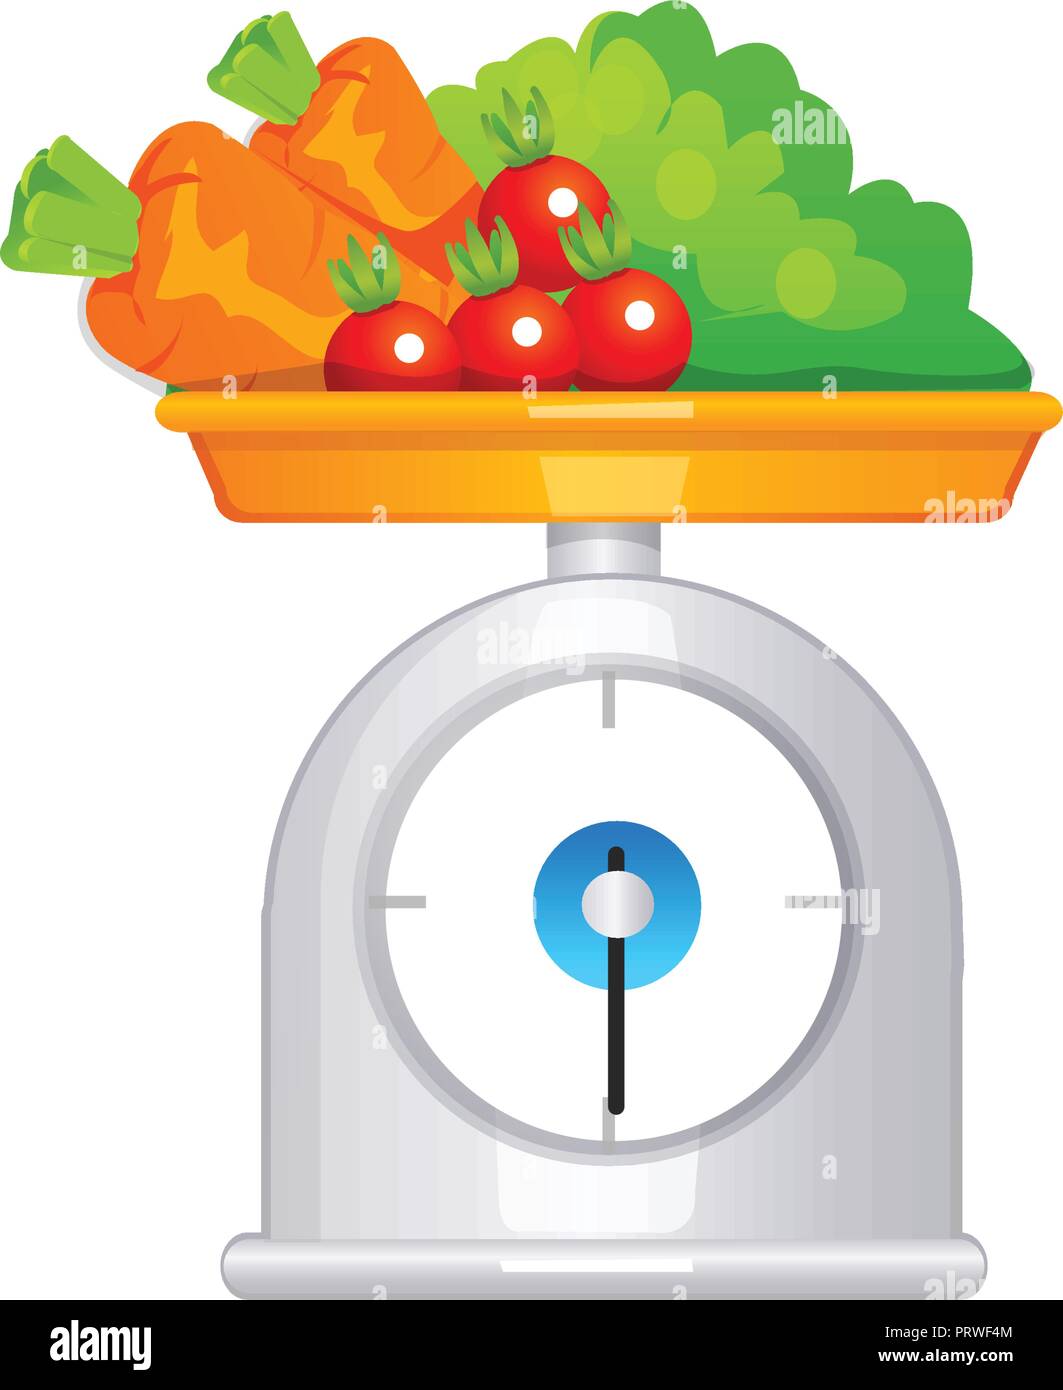 Bilance con frutta. Illustrazione di vettore isolato su sfondo bianco Illustrazione Vettoriale